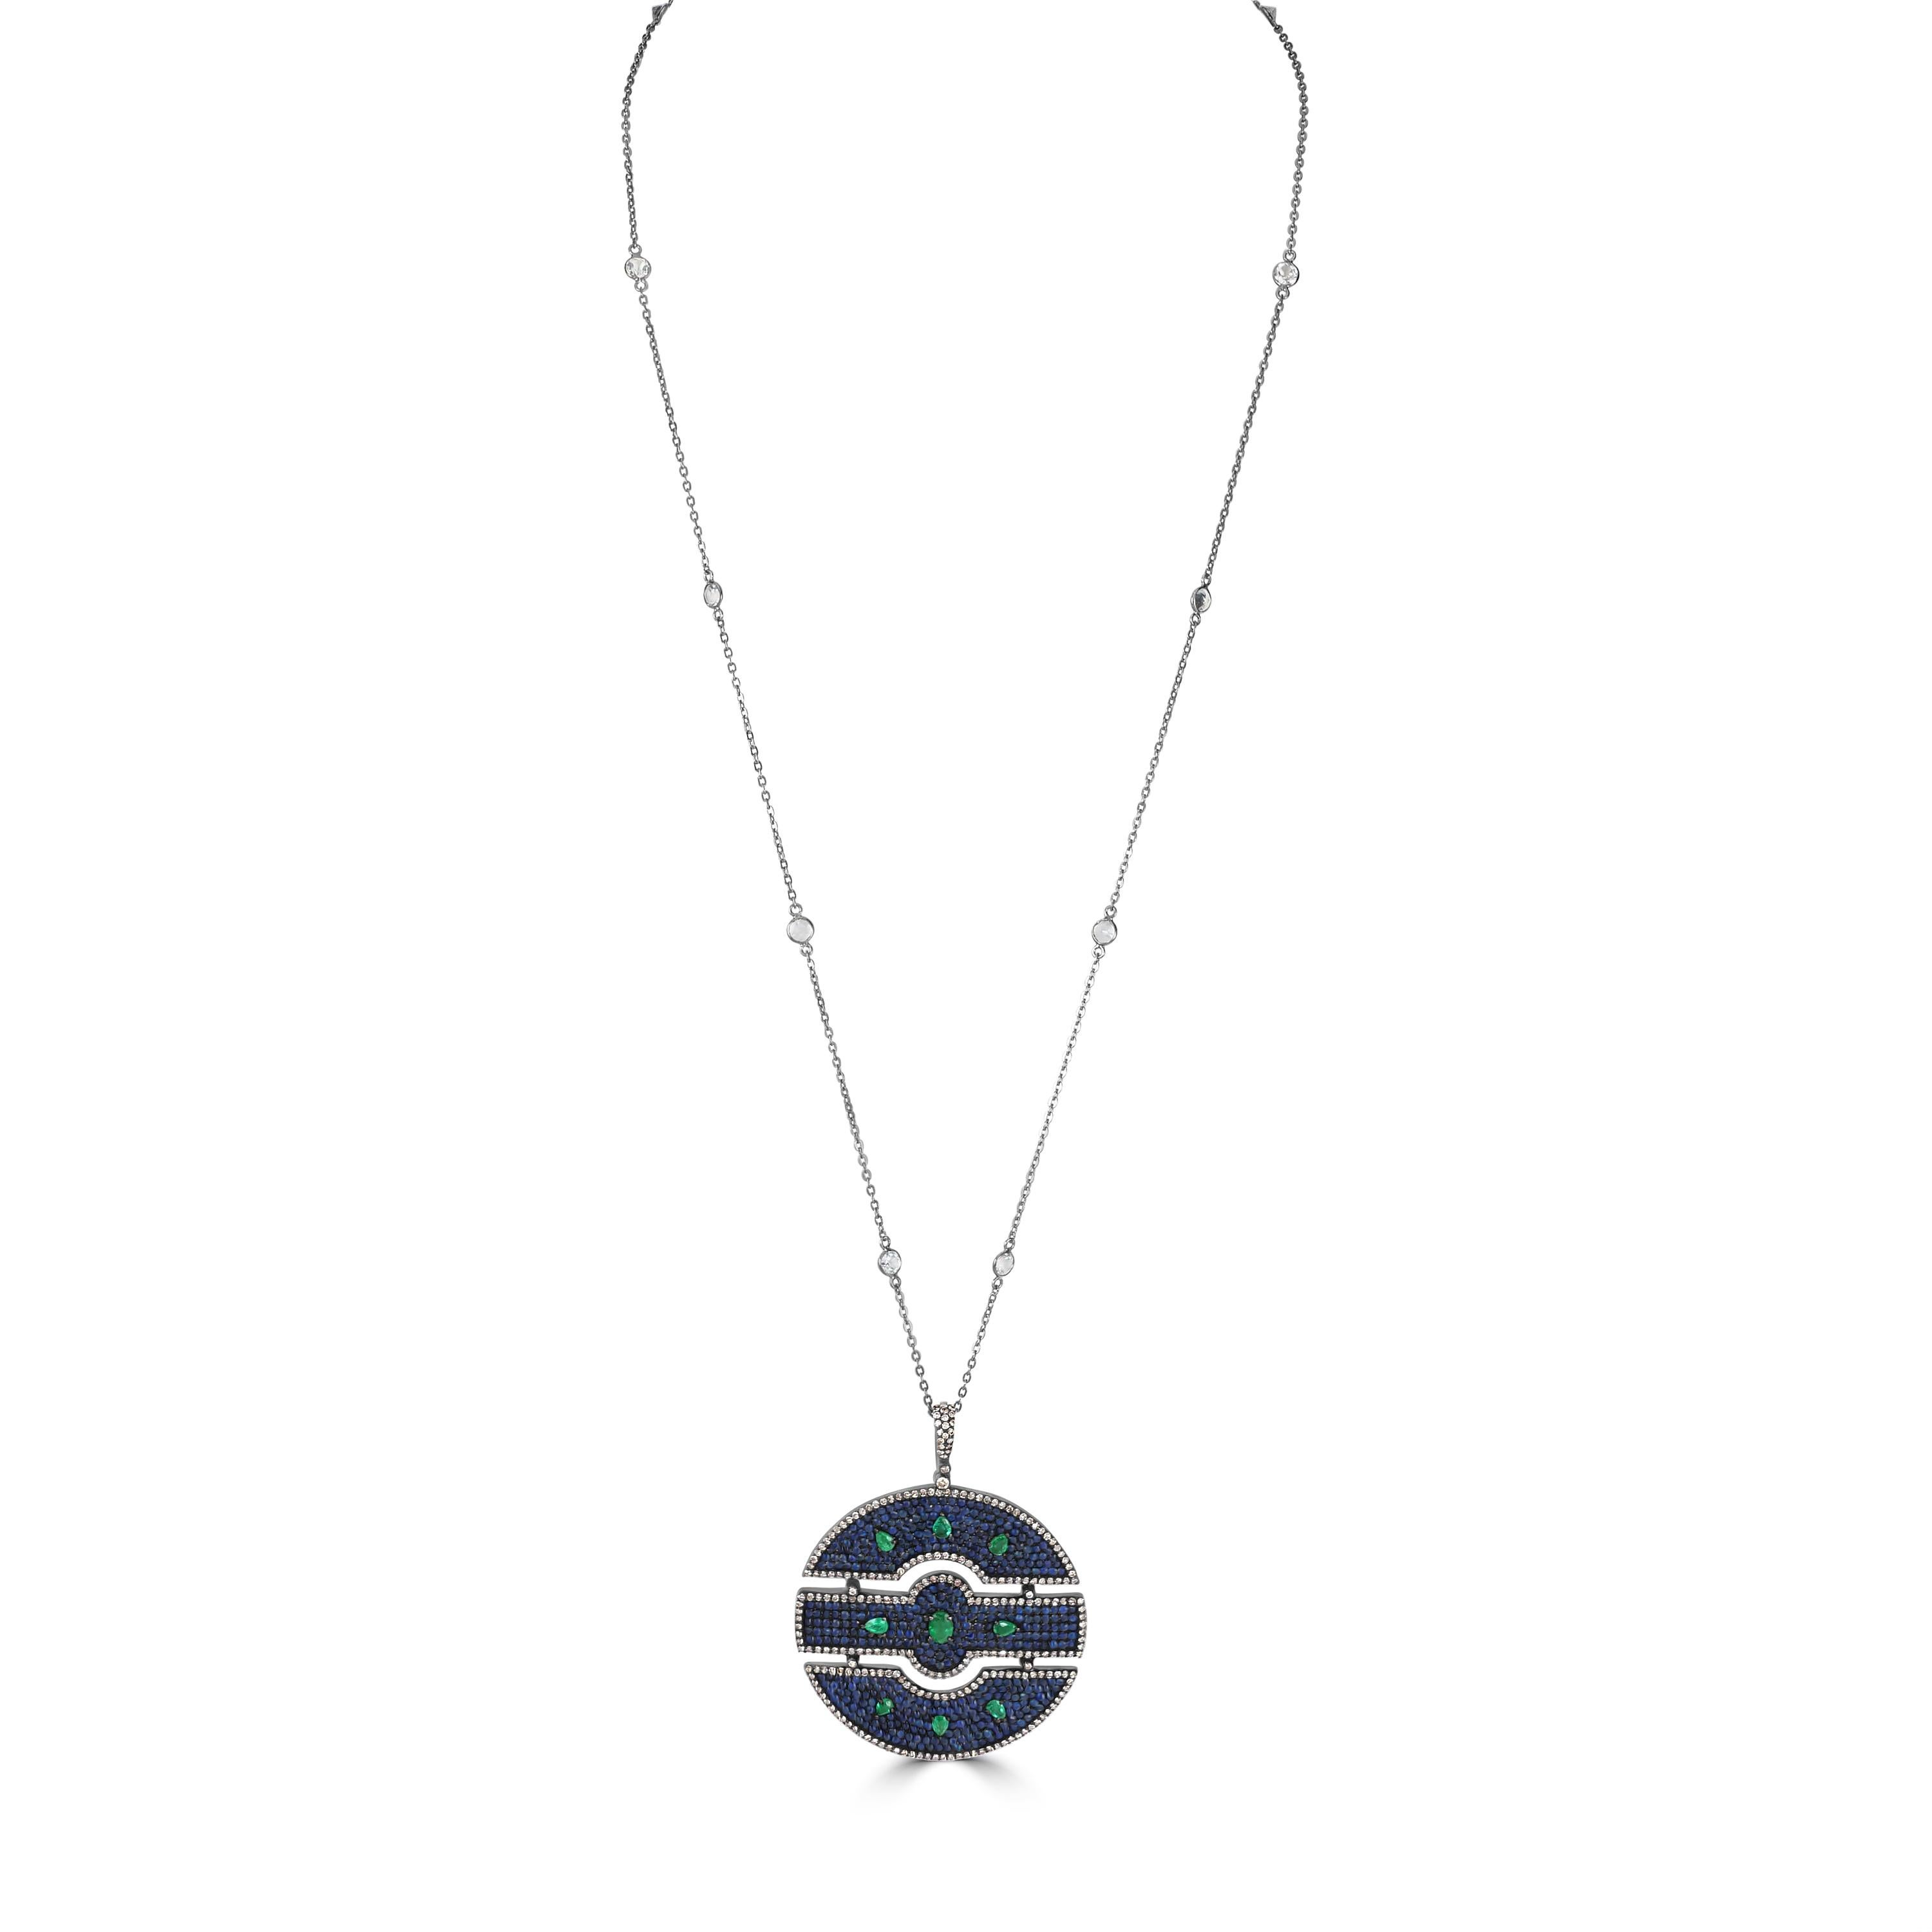 Voici notre superbe diamant Victorien de 13.6 Cttw. Collier à pendentifs en saphir bleu, émeraude, topaze et diamant, un chef-d'œuvre d'élégance et de sophistication intemporelle.

Ce collier pendentif exquis présente une chaîne en argent sterling